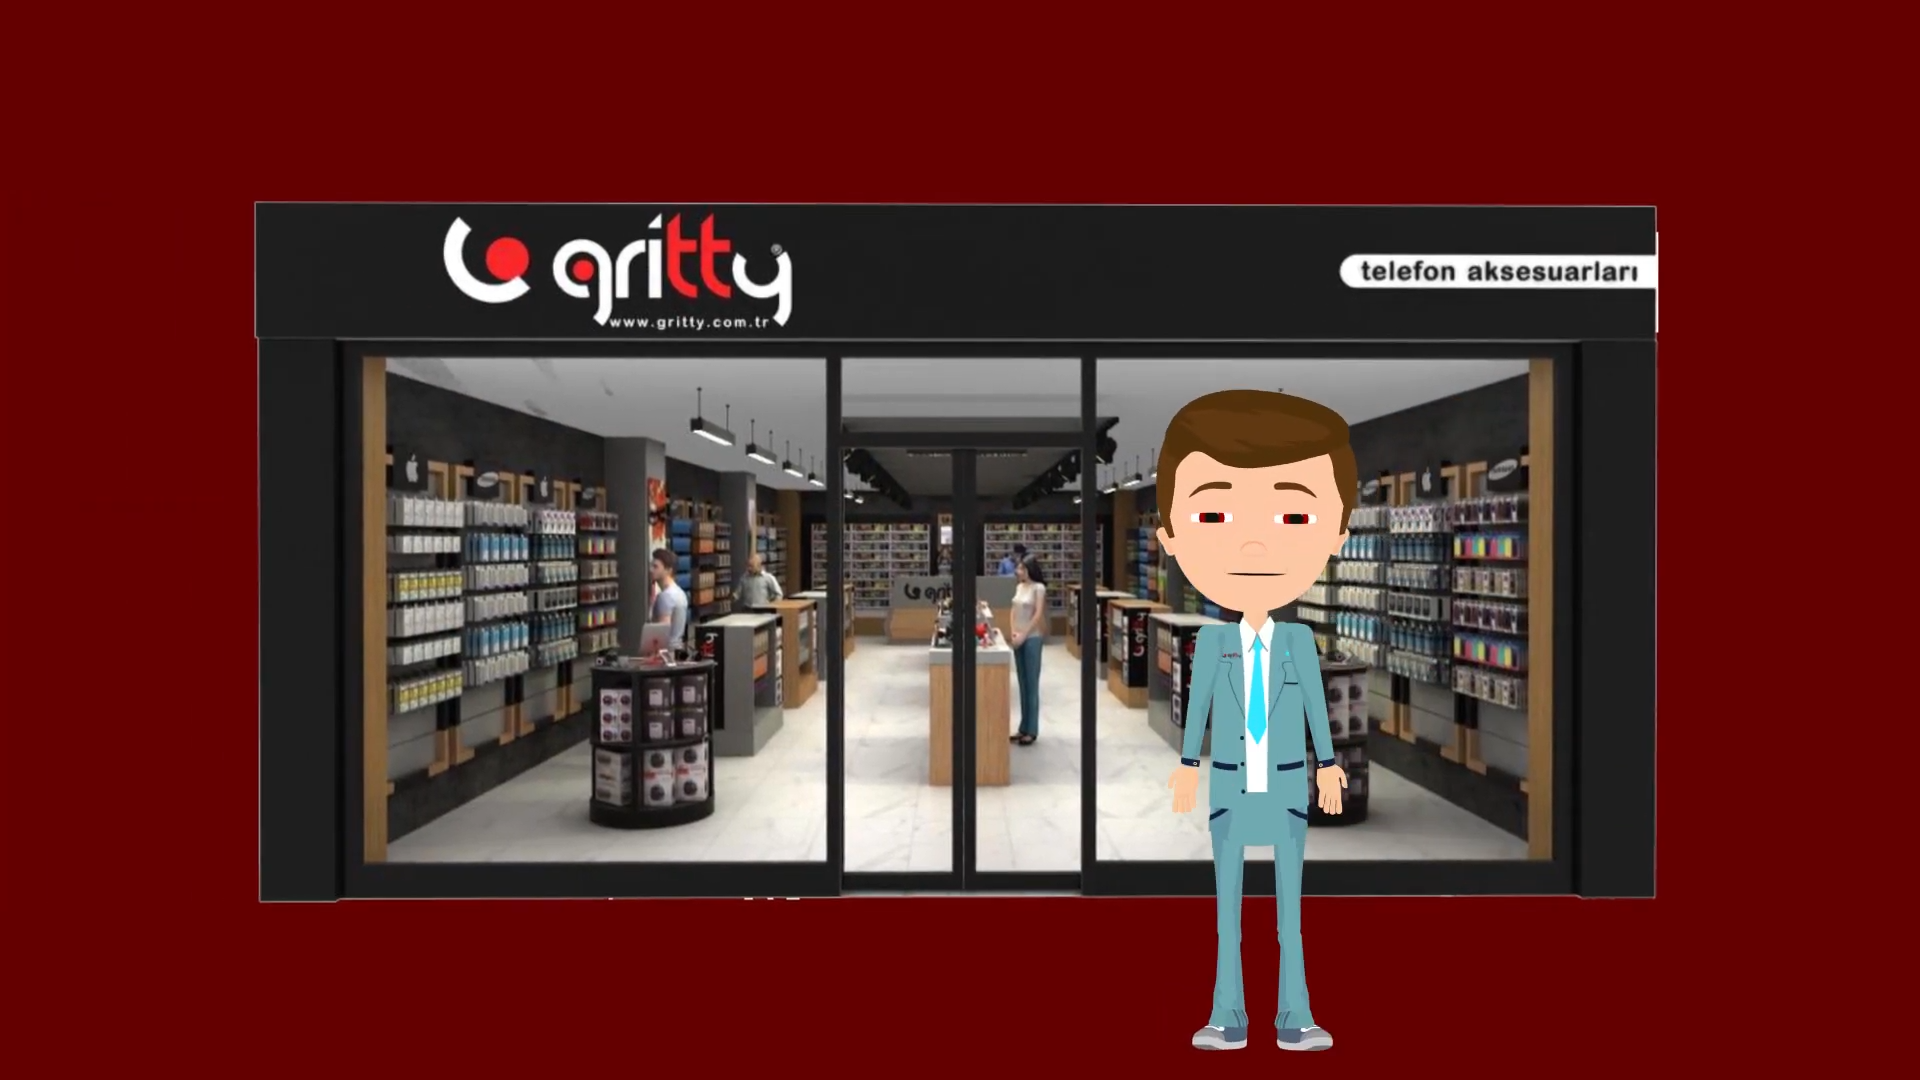 Gritty Bayilik Mobile aksesuar franchise mağazalar zinciri